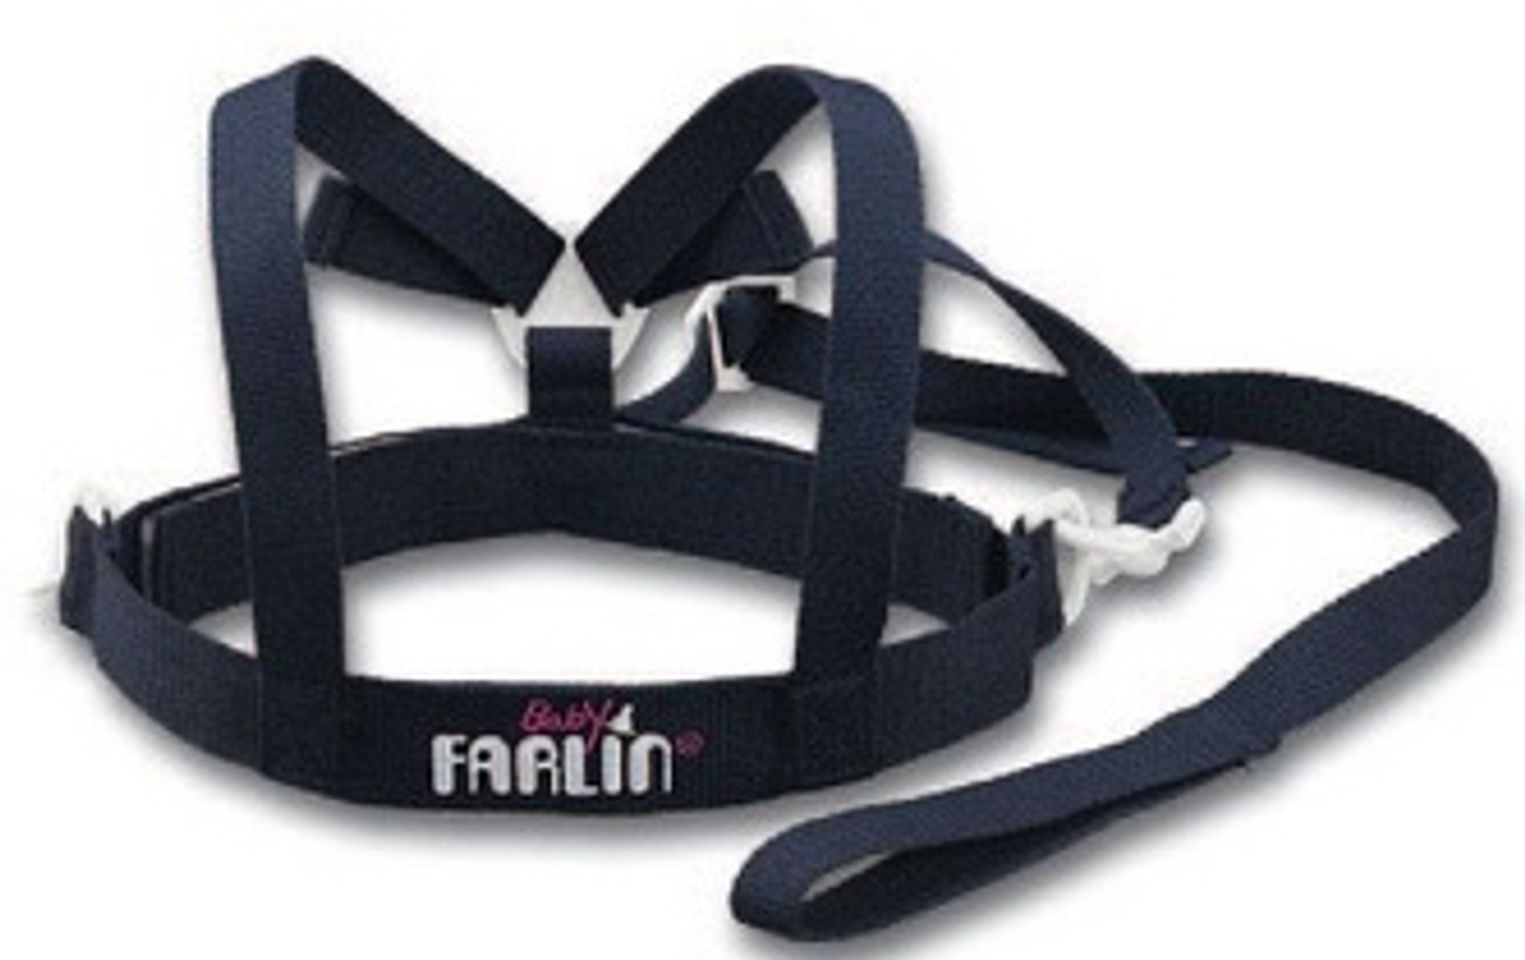 Đai tập đi cho bé Farlin BF500A tạo cảm giác an toàn giúp bé bước đi mạnh dạn